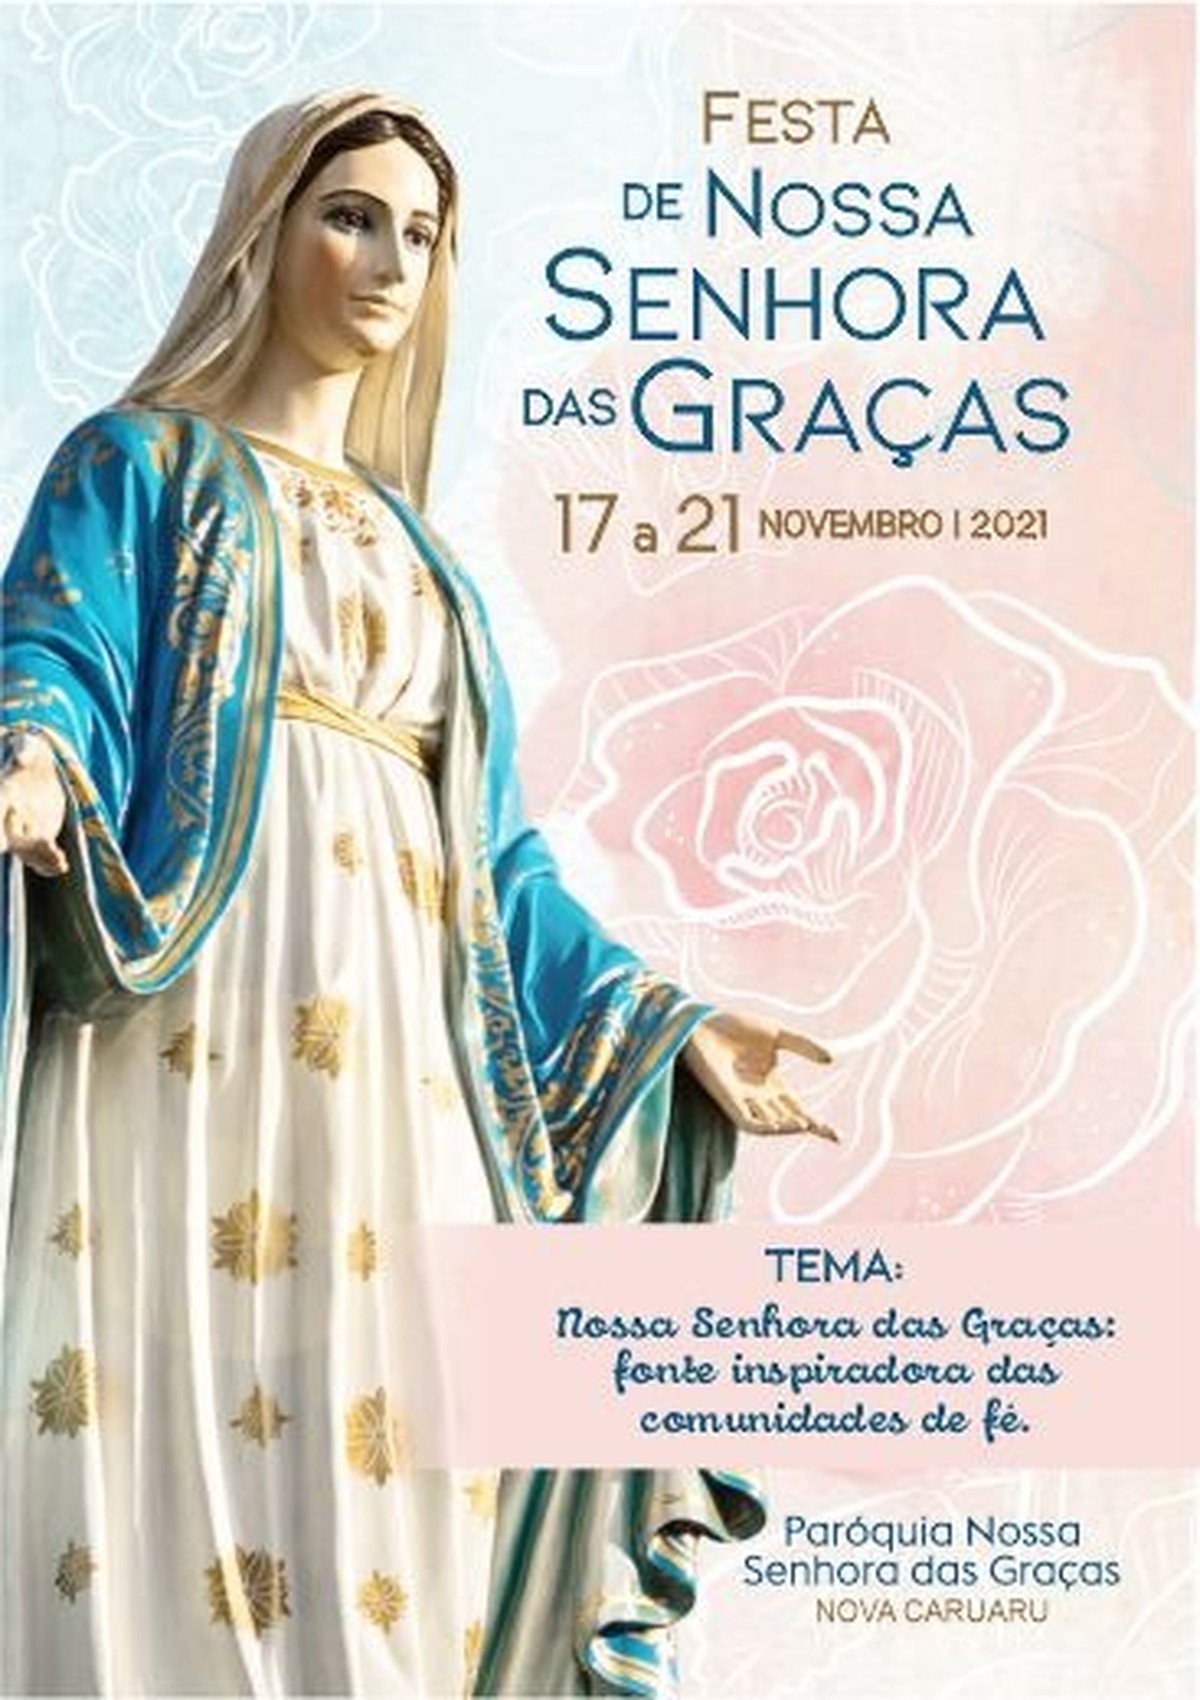 Festa de Nossa Senhora das Graças é celebrada em Caruaru | Caruaru e Região  | G1